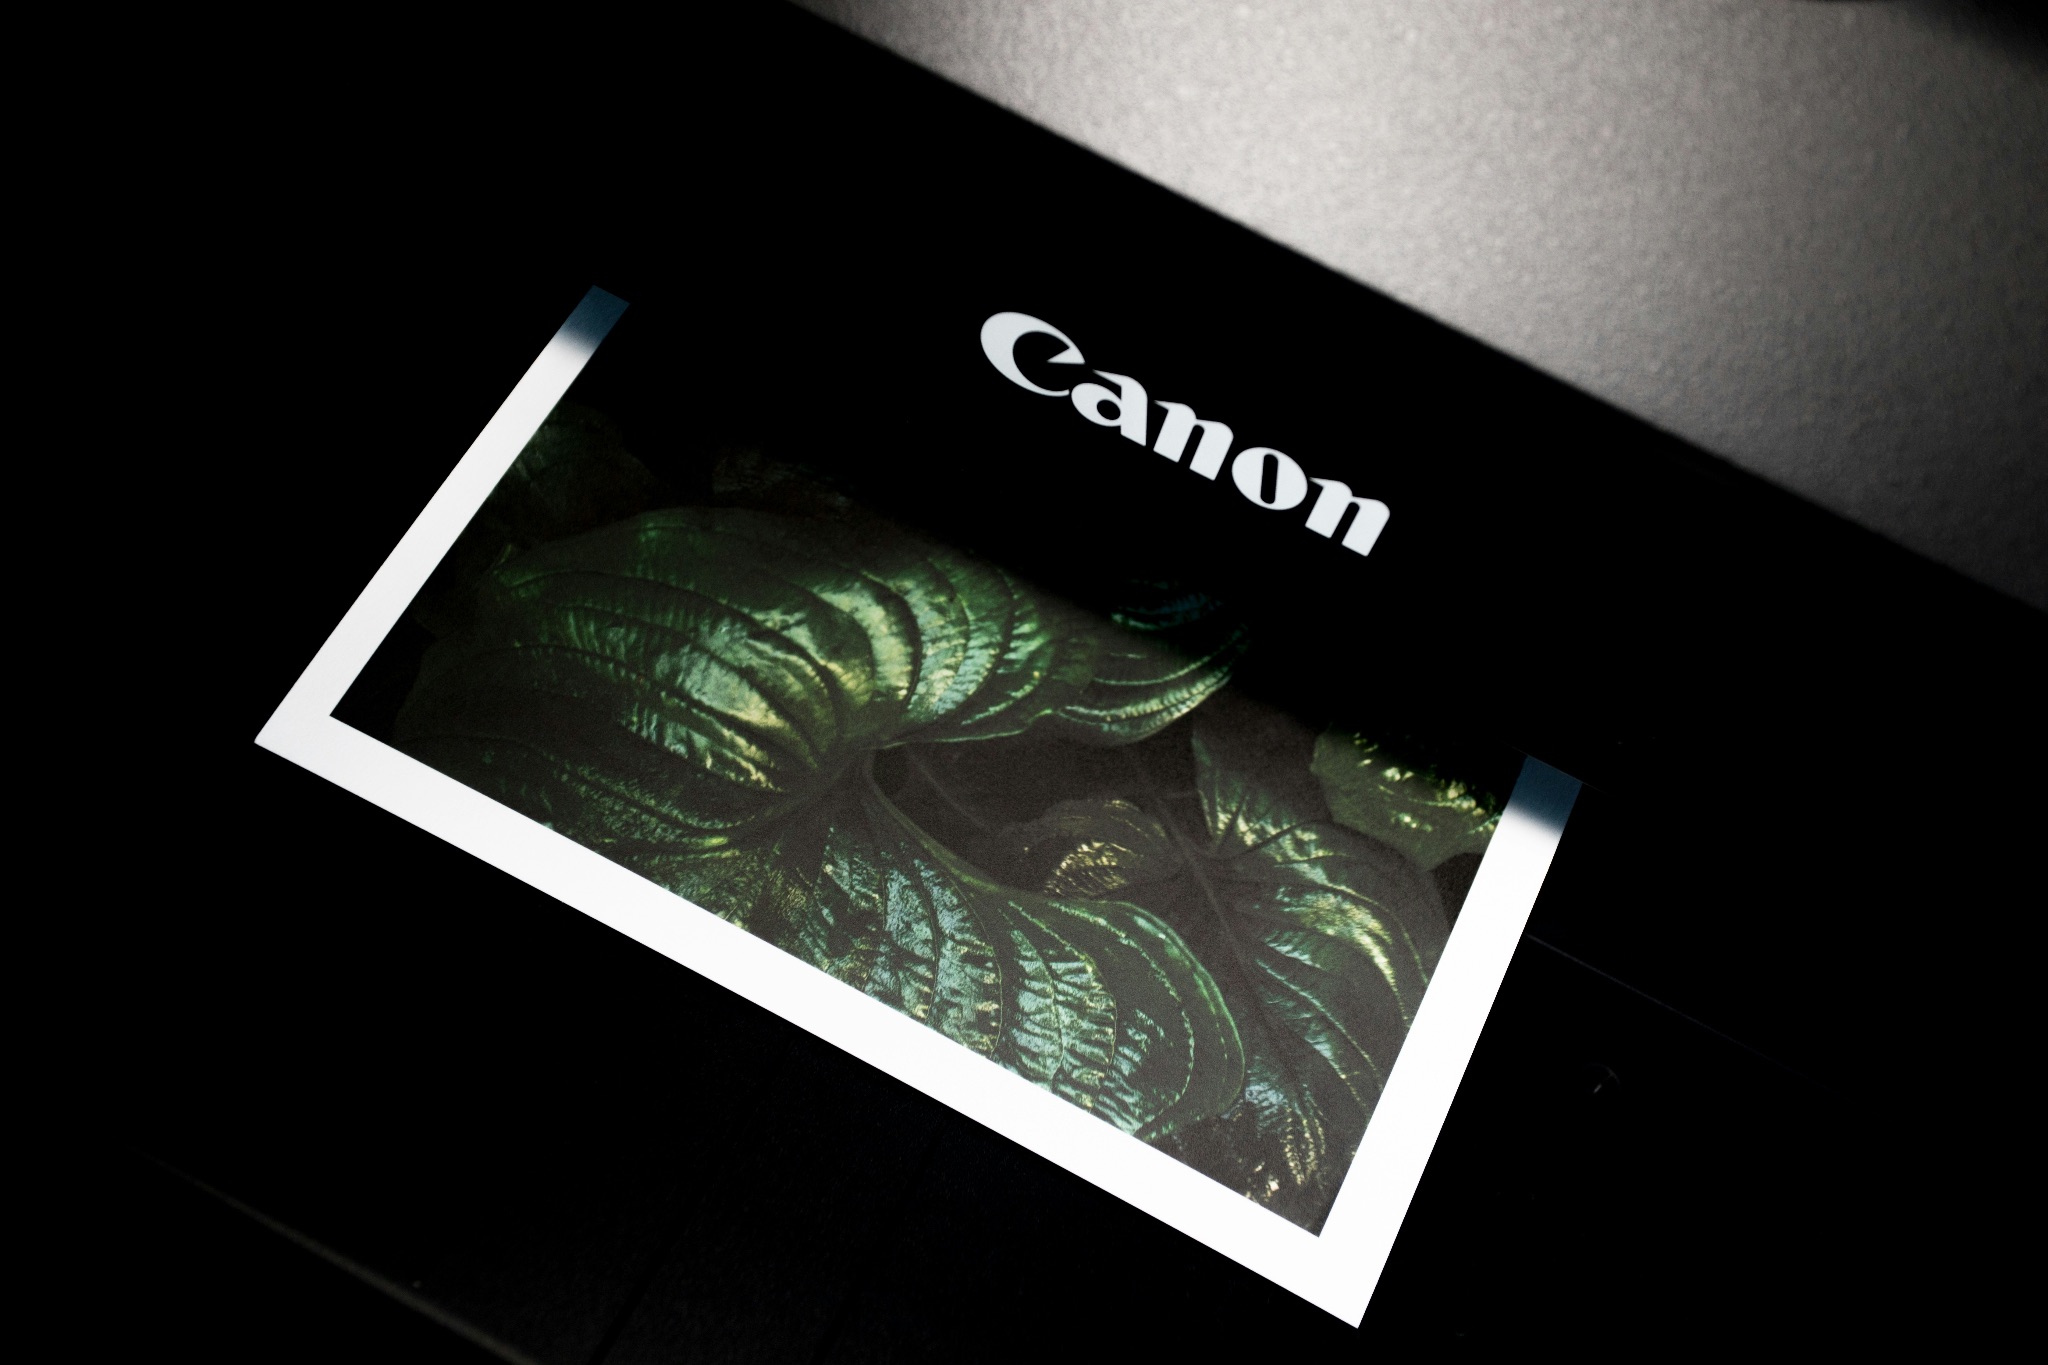 A Canon printer creating a photographic print 